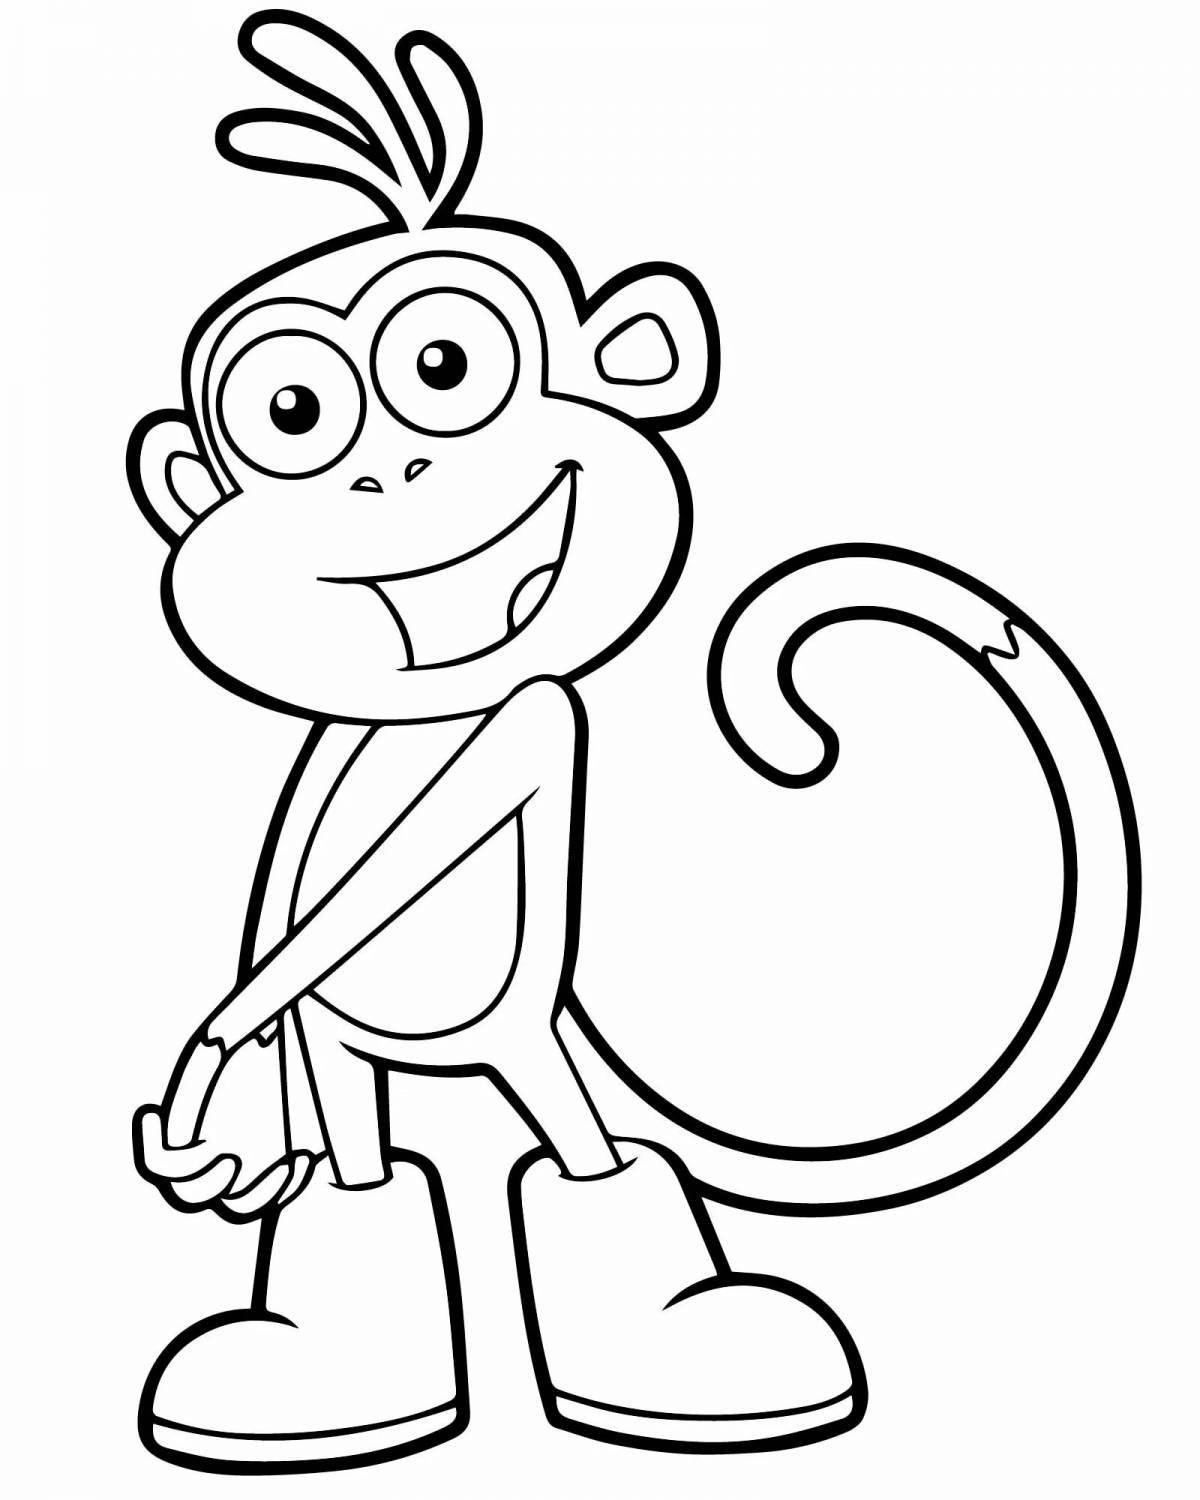 Увлекательная раскраска обезьяны для детей